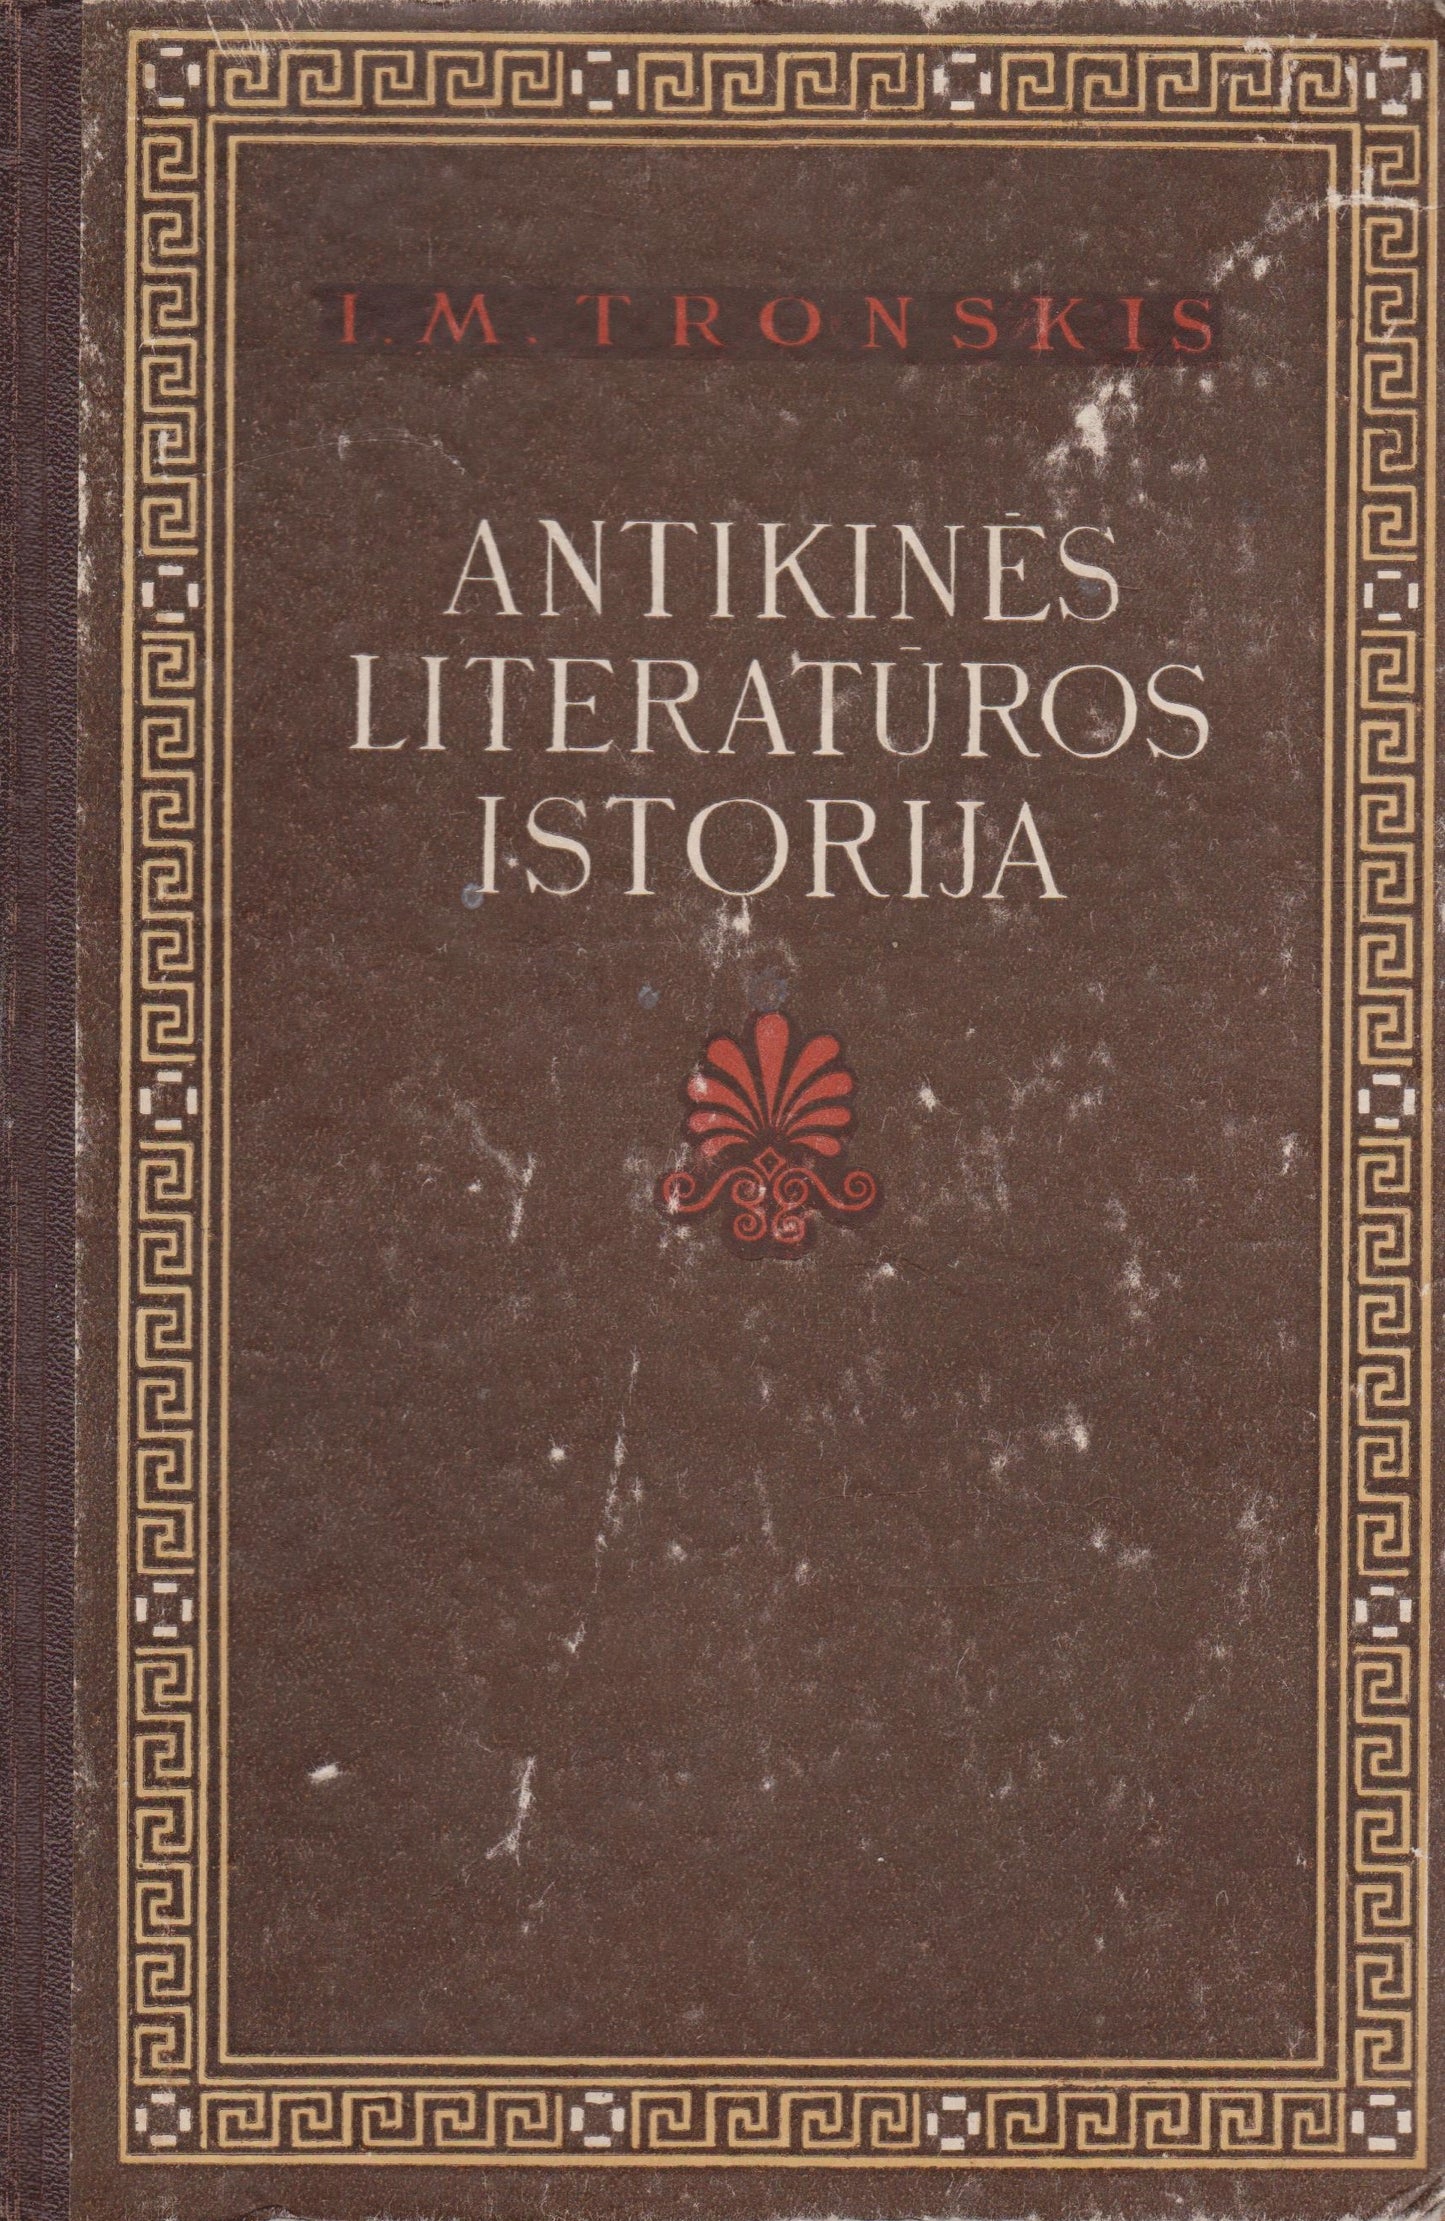 J.M. Tronskis - Antikinės literatūros istorija, 1955 m.